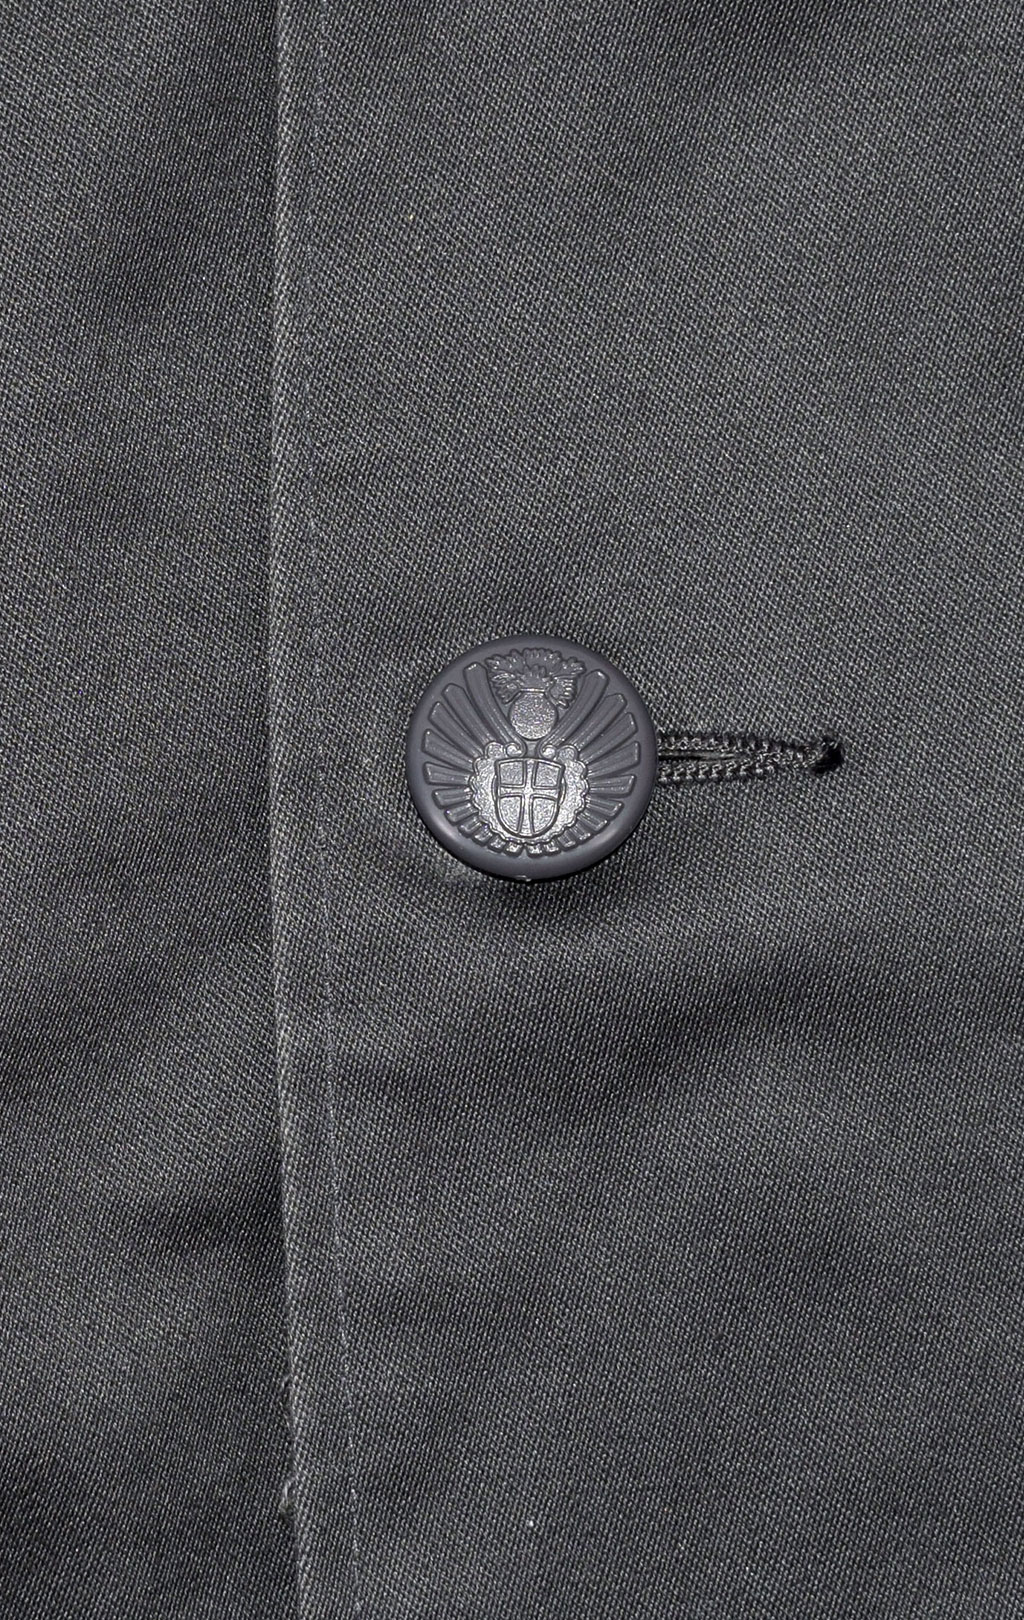 Куртка Civilversvaret хлопок grey б/у Дания